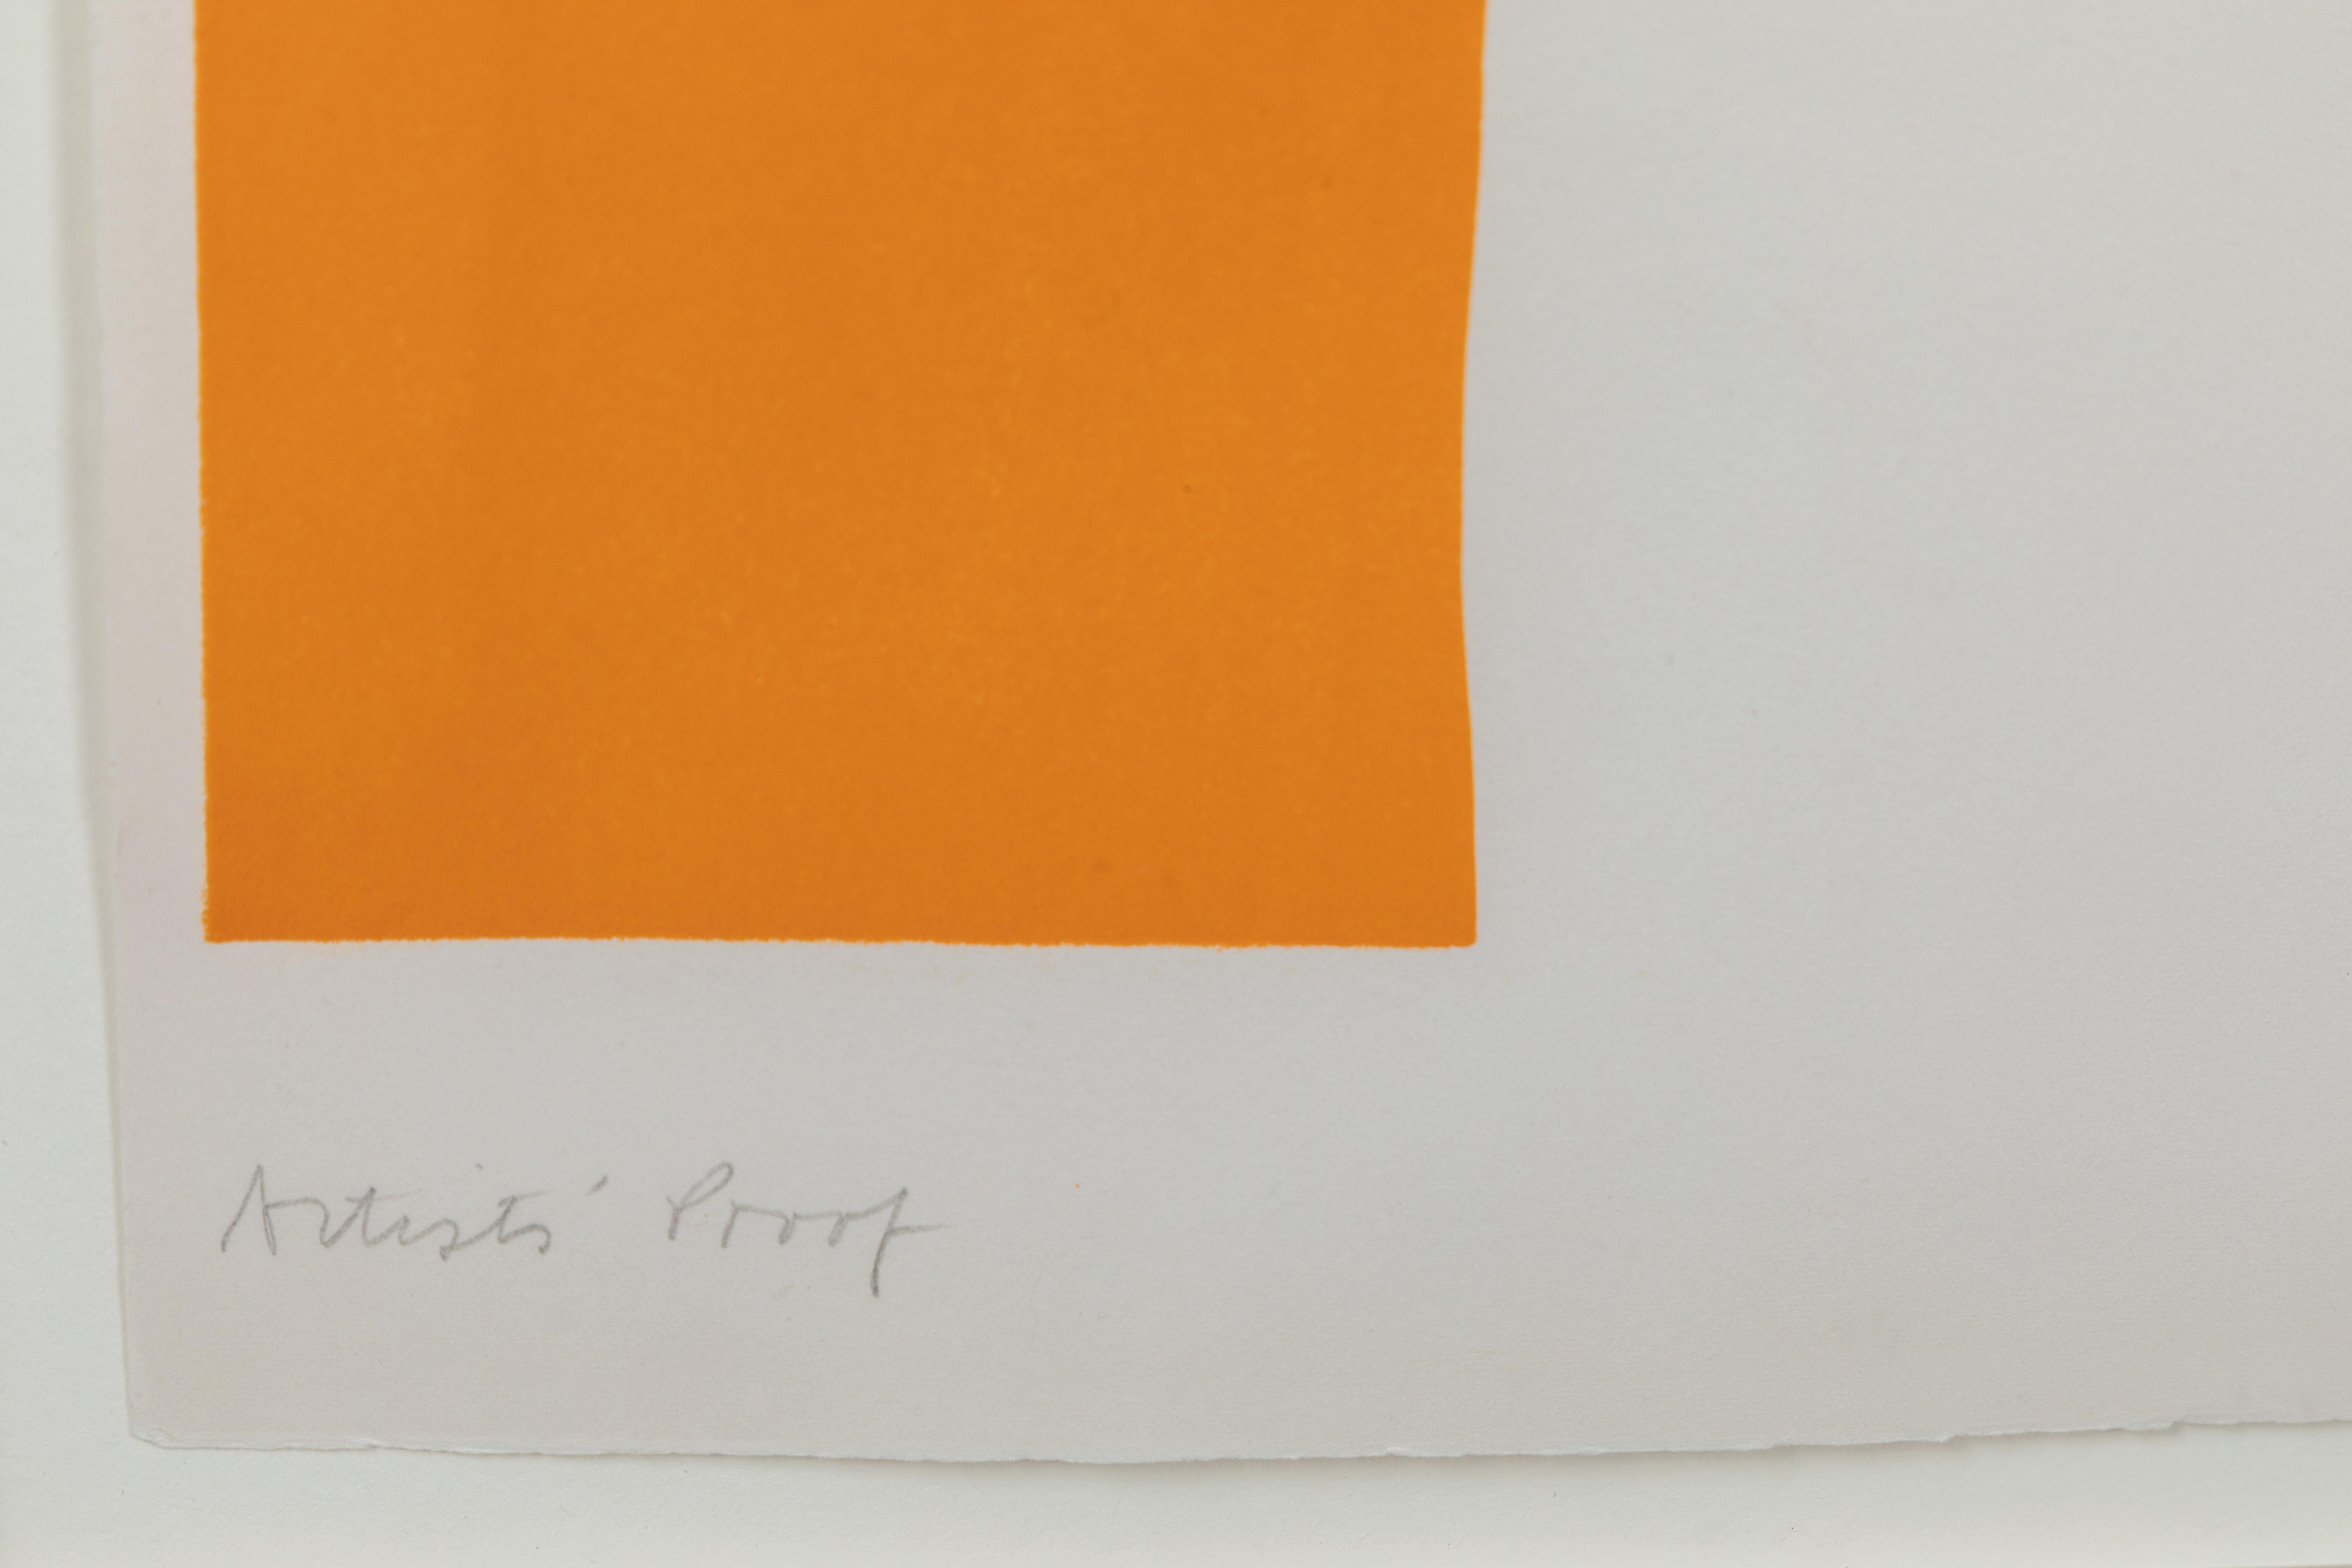 Cleve Gray, Amerikaner, 1918-2004, ohne Titel, (orange, chamois, schwarz mit blauem Rand), Lithografie, Künstlerabzug, mit Bleistift signiert. Maße: Blatt 30 x 23, gerahmt und plexiglasiert 33 x 25,5.
Provenienz: Aus der persönlichen Sammlung von